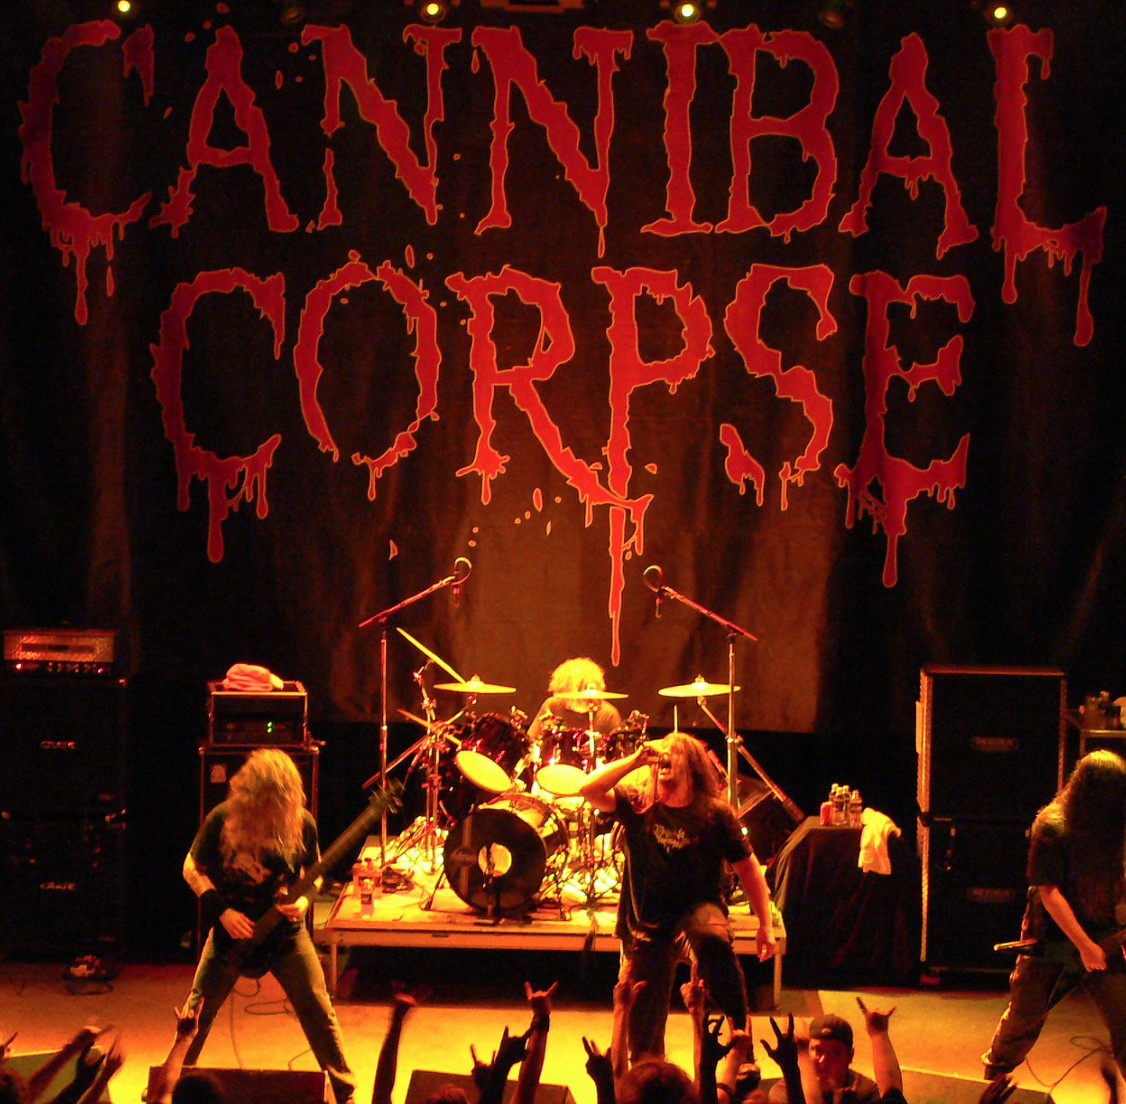 Cannibal Corpse at Van Buren